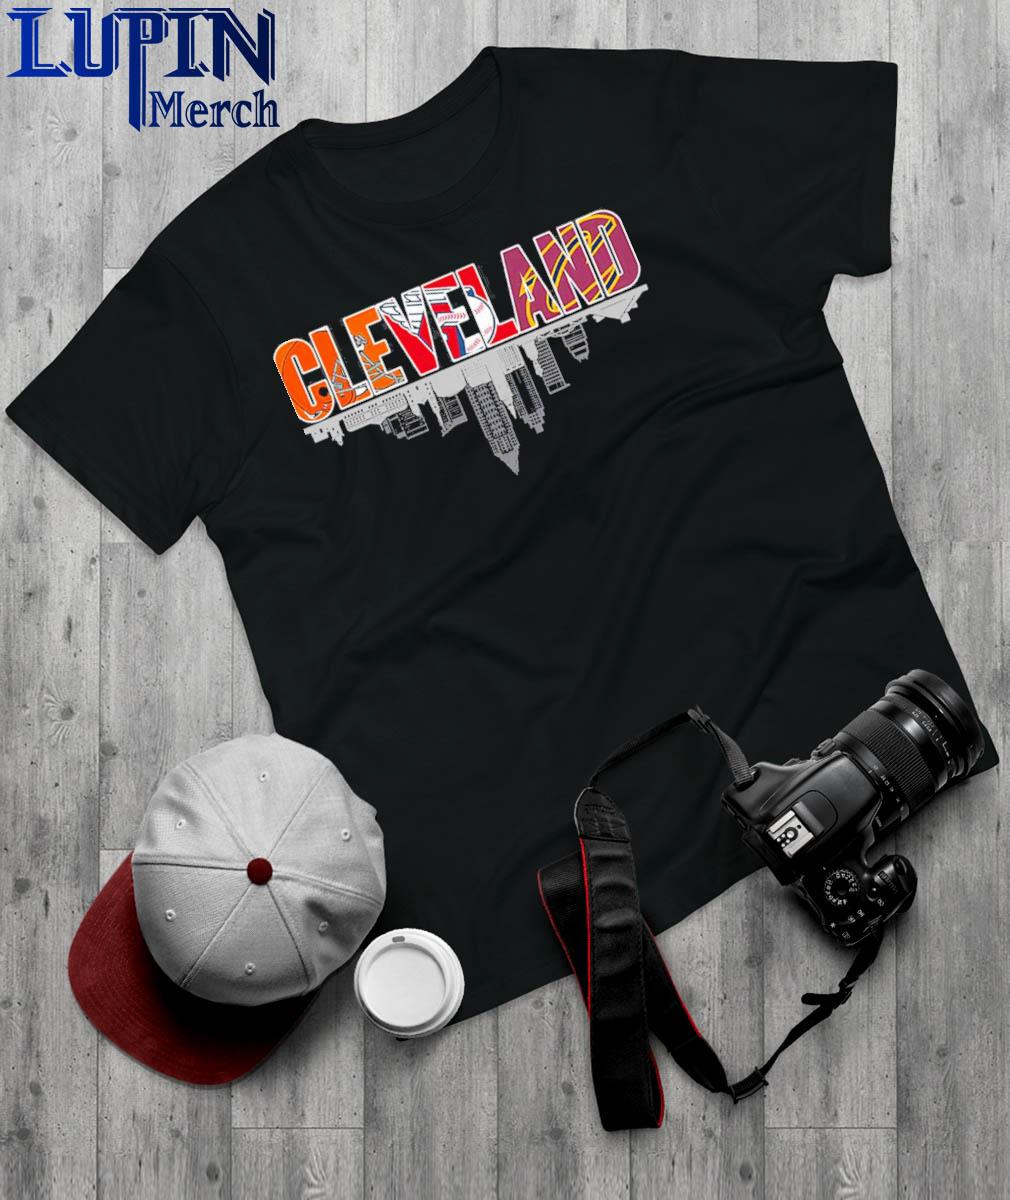 Cleveland Baseball Tees, Tanks and Hats